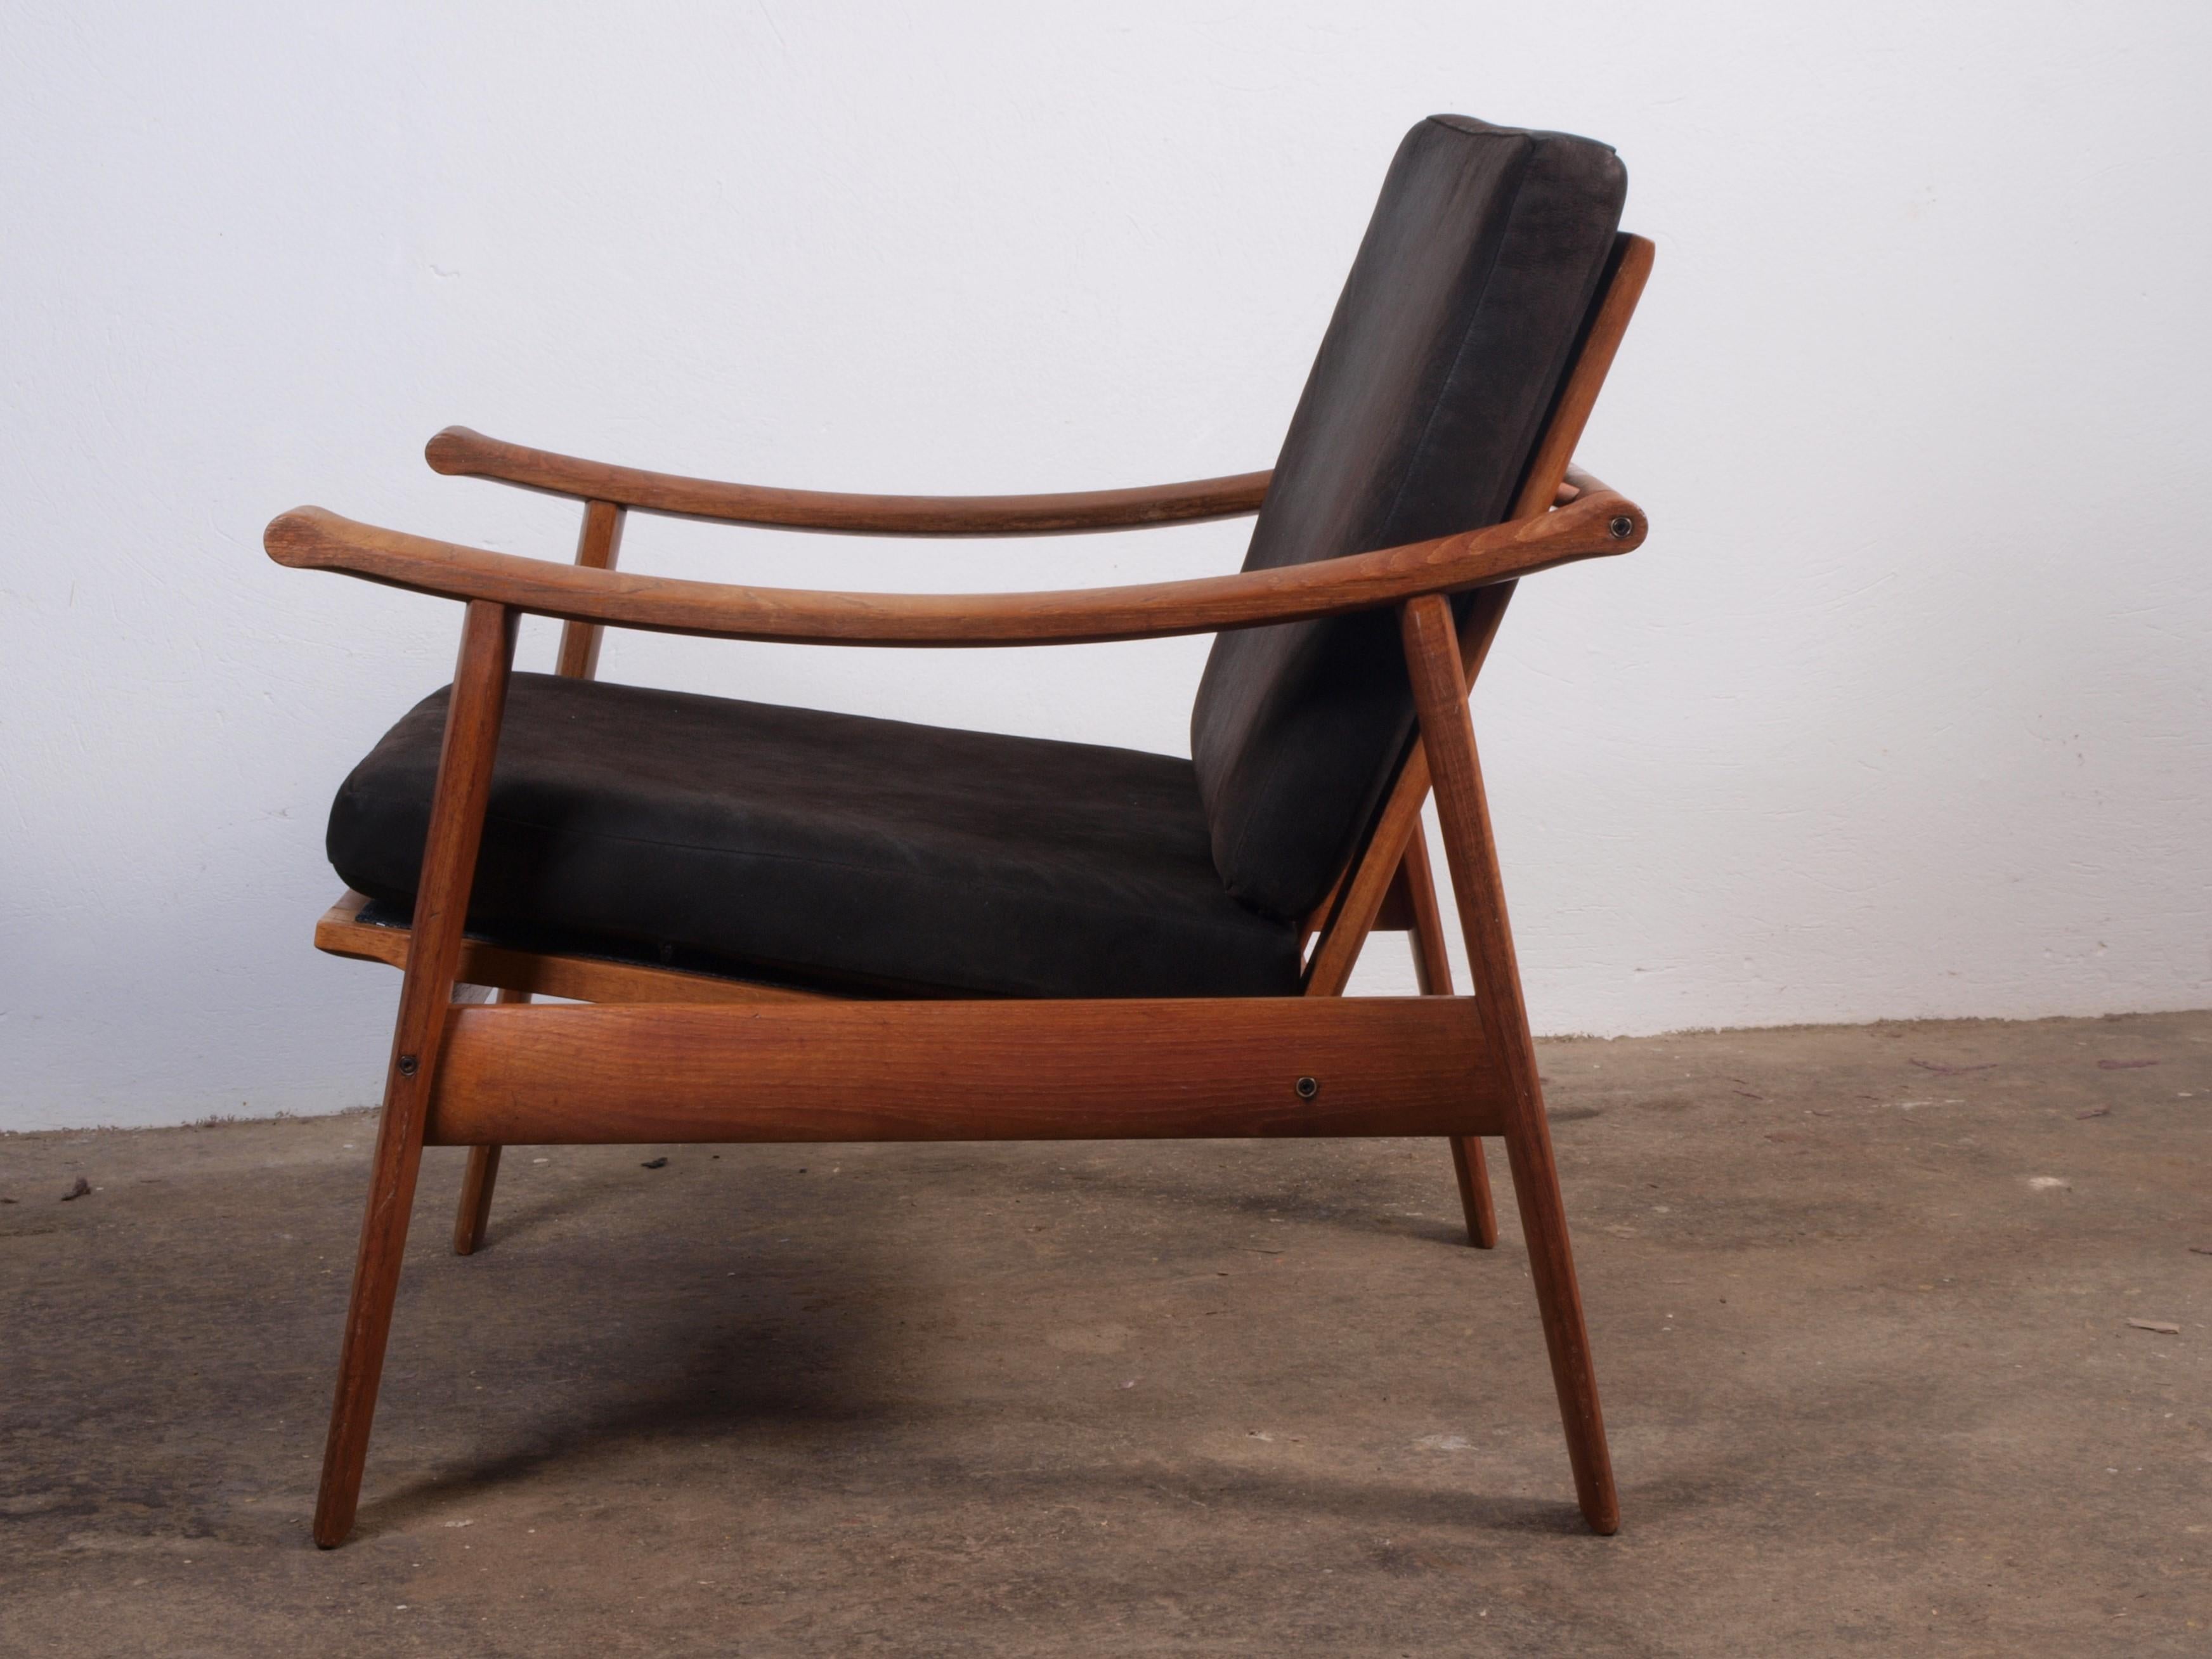 Danish Spade Chairs in Teak in the style of Finn Juhl, 1960s For Sale 9